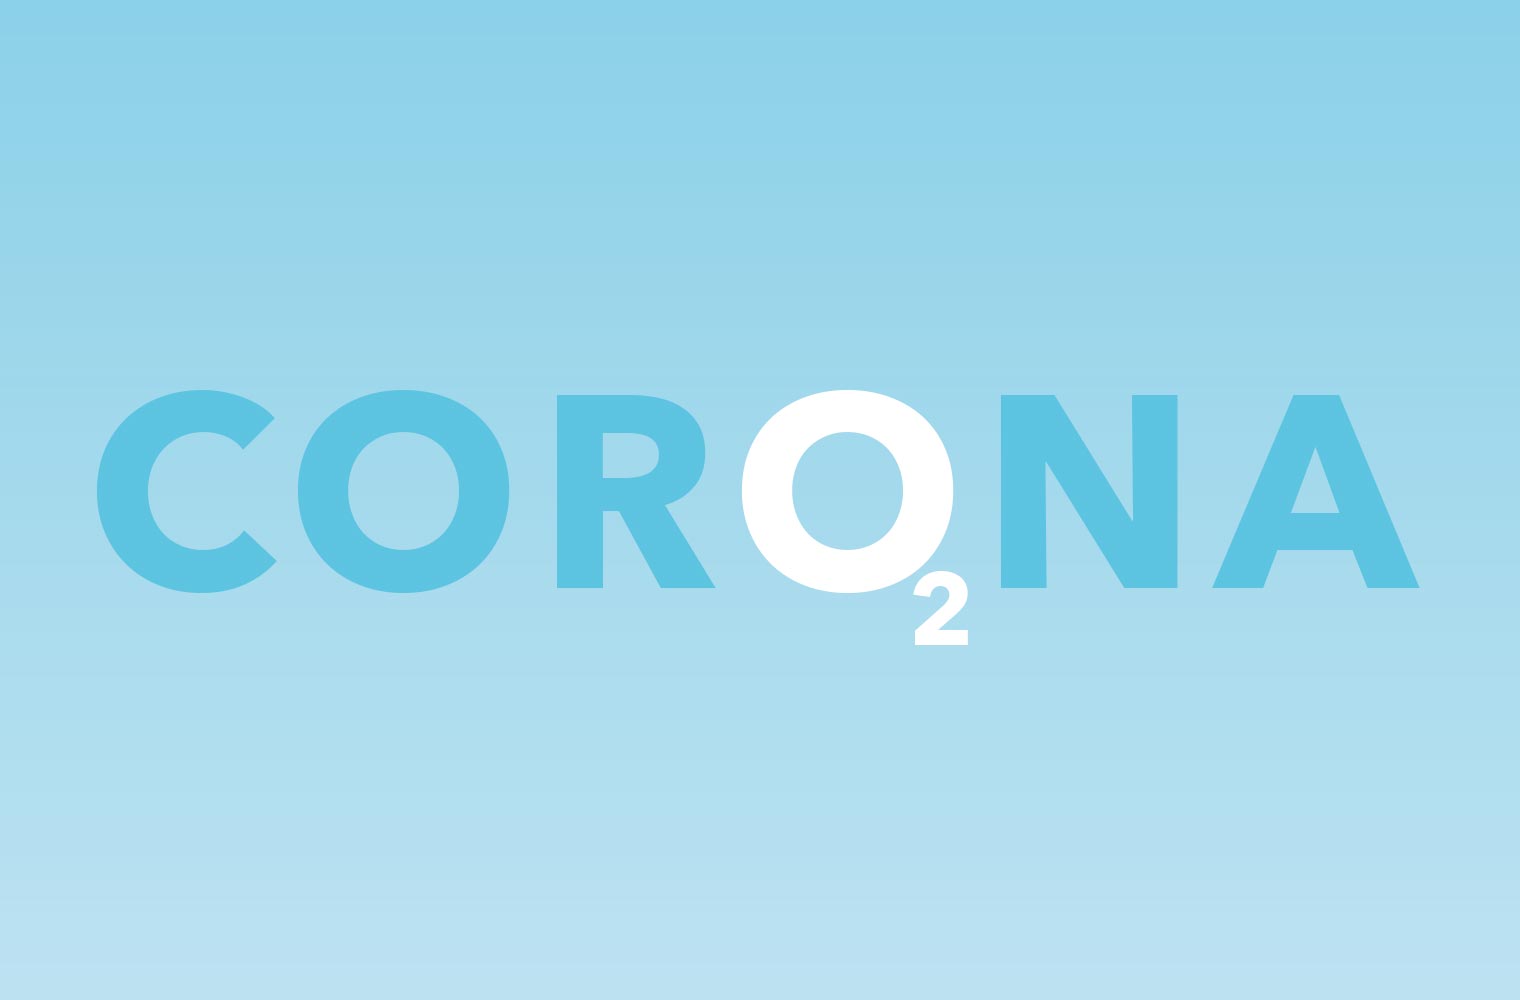 Die Grafik zeigt das Wort CORONA, wobei das zweite 'O' mit der daruntergestellten Ziffer 2 zum chemischen Zeichen O₂ für Sauerstoff wird. 